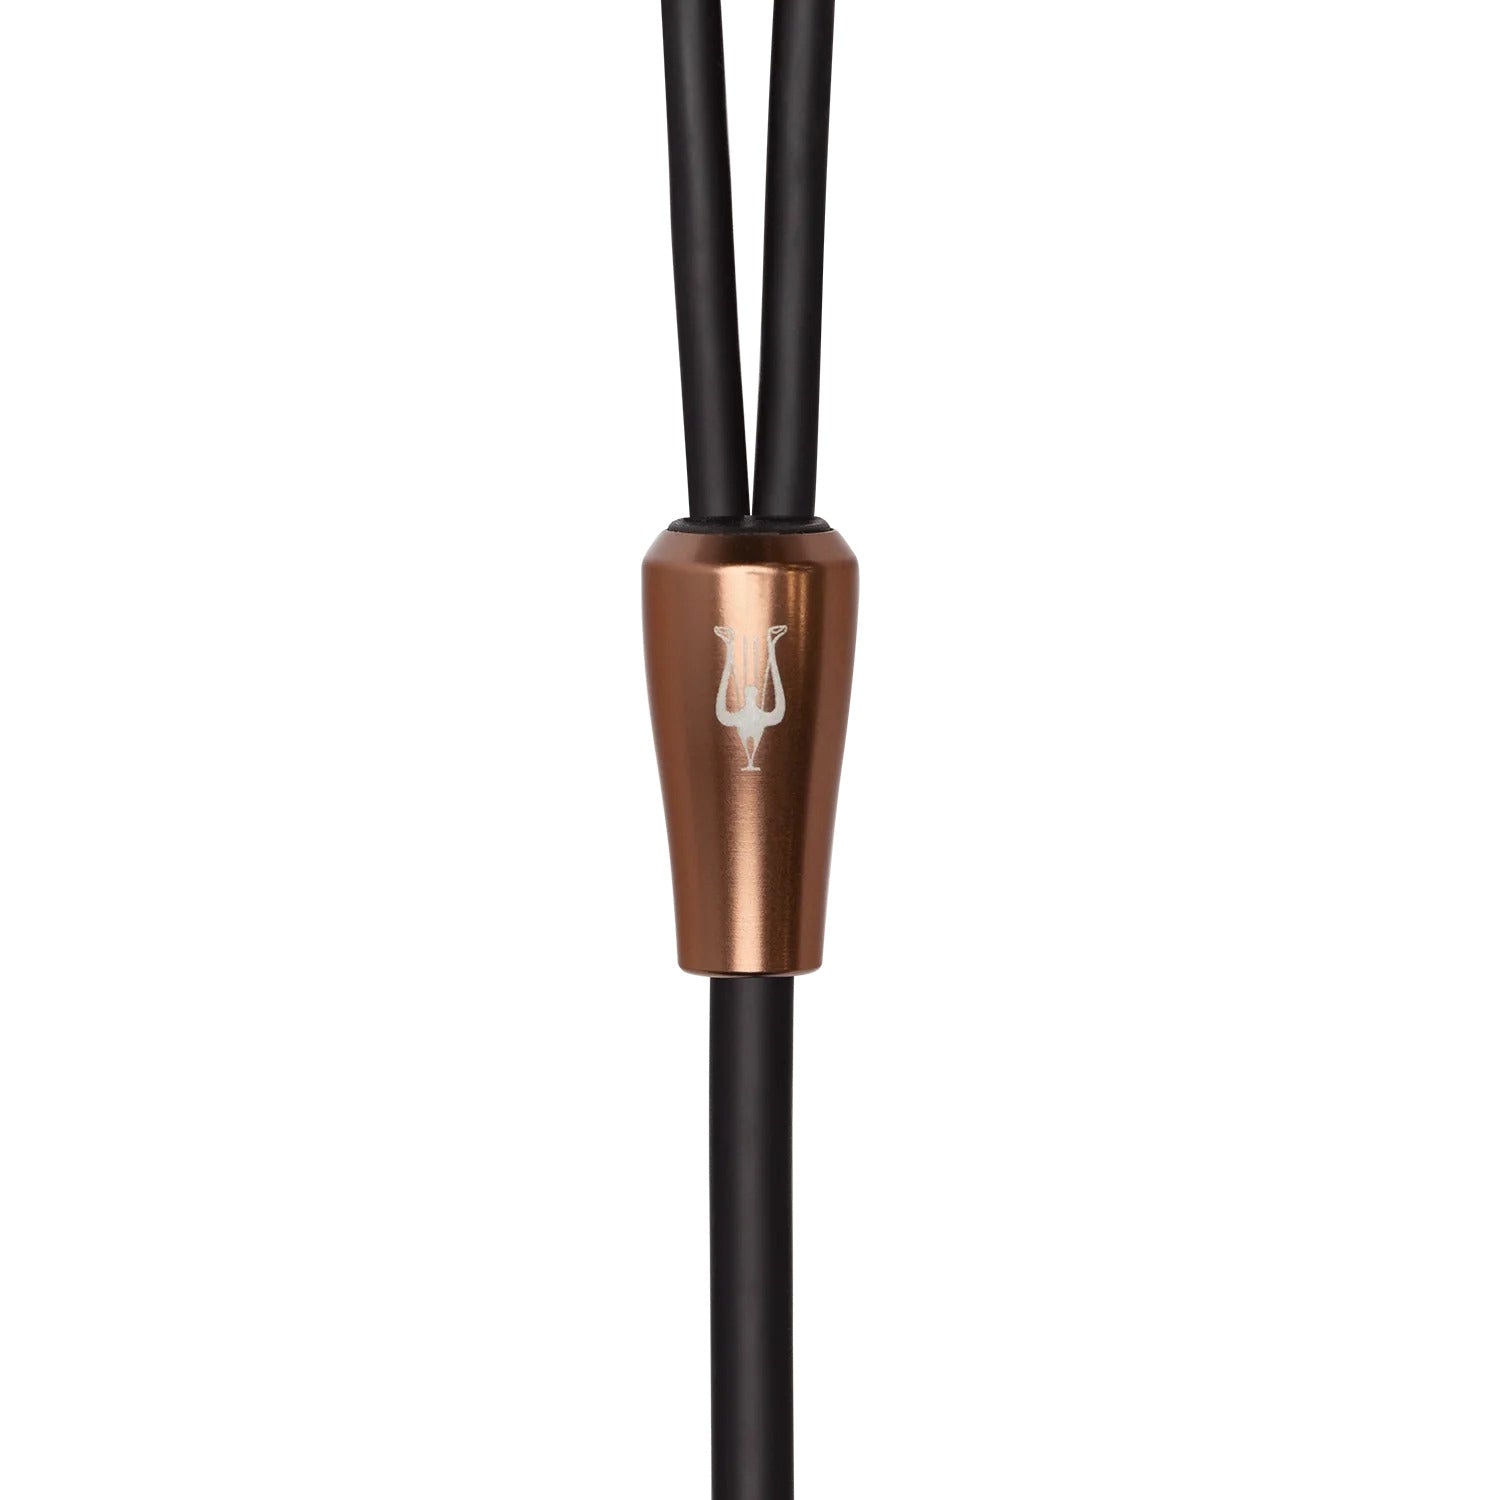 Meze Audio 3.5mm Liric Standard Cable